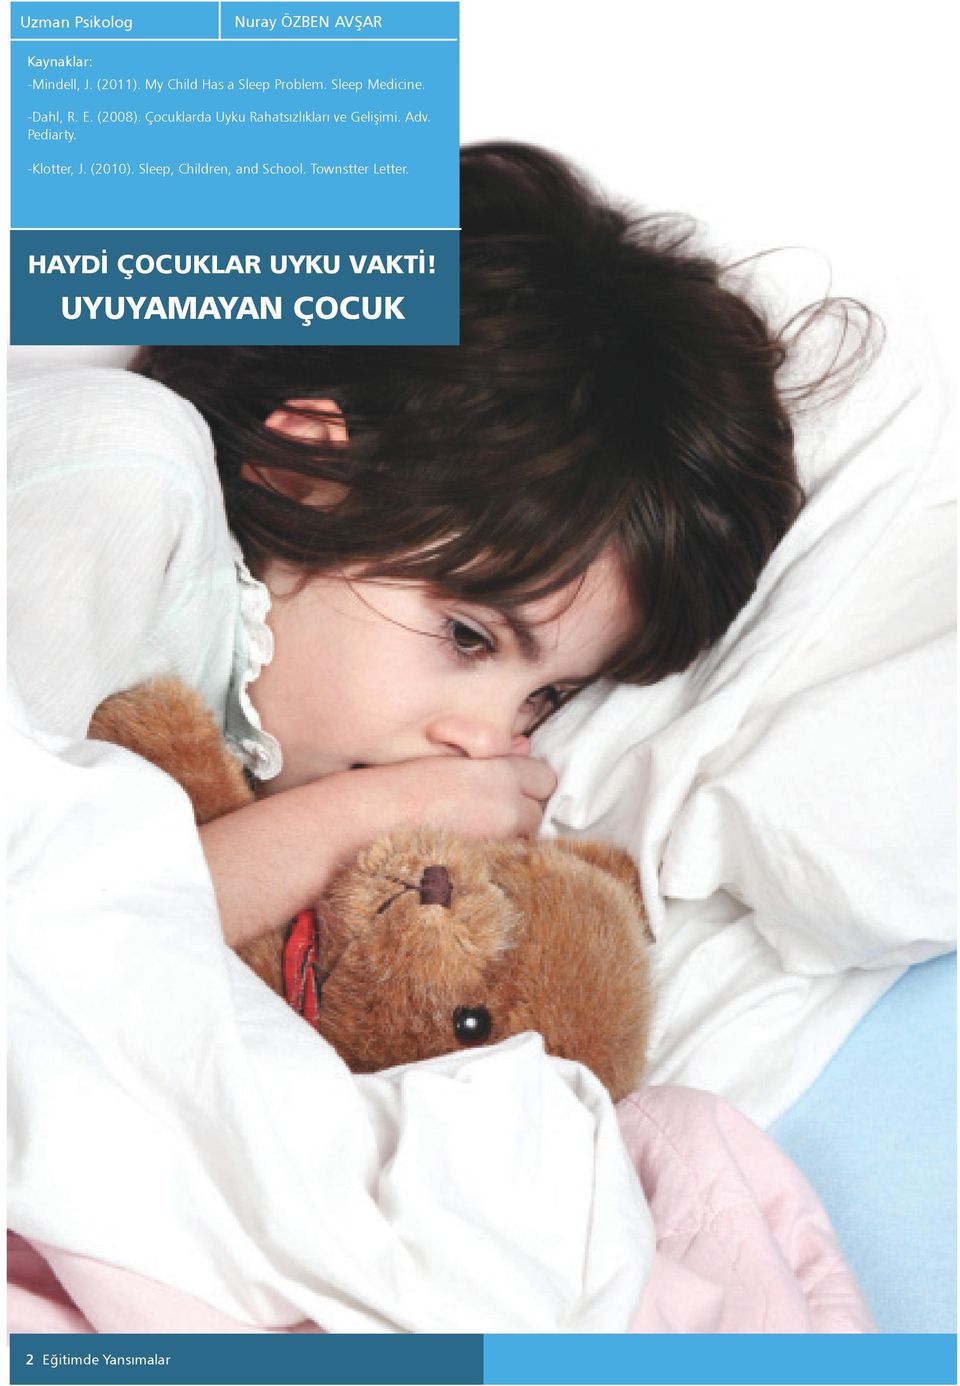 Çocuklarda Uyku Rahatsızlıkları ve Gelişimi. Adv. Pediarty. -Klotter, J. (2010).